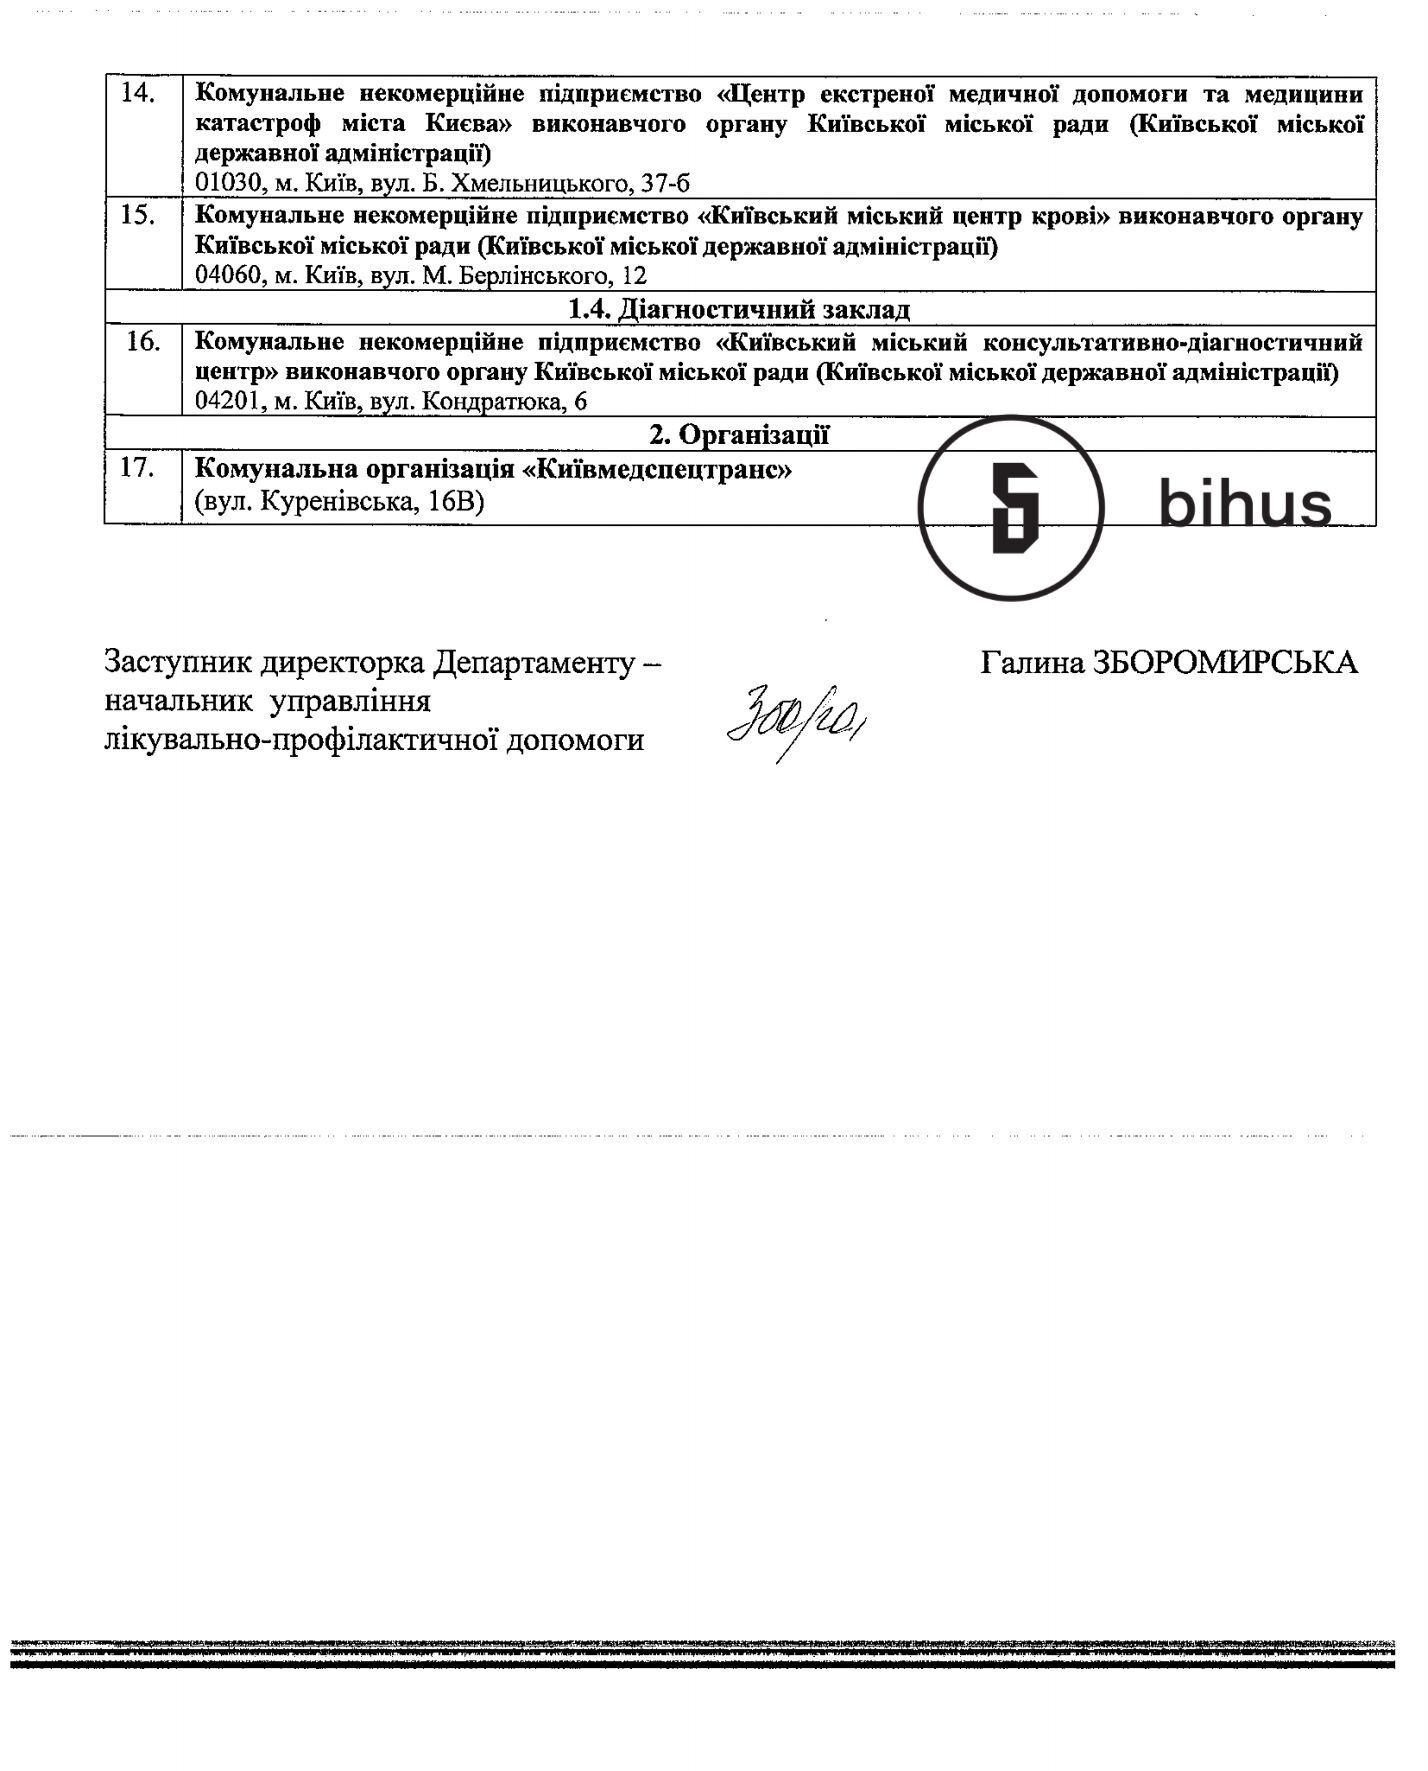 Опубликован список требований для VIP-пациентов с коронавирусом в Киеве